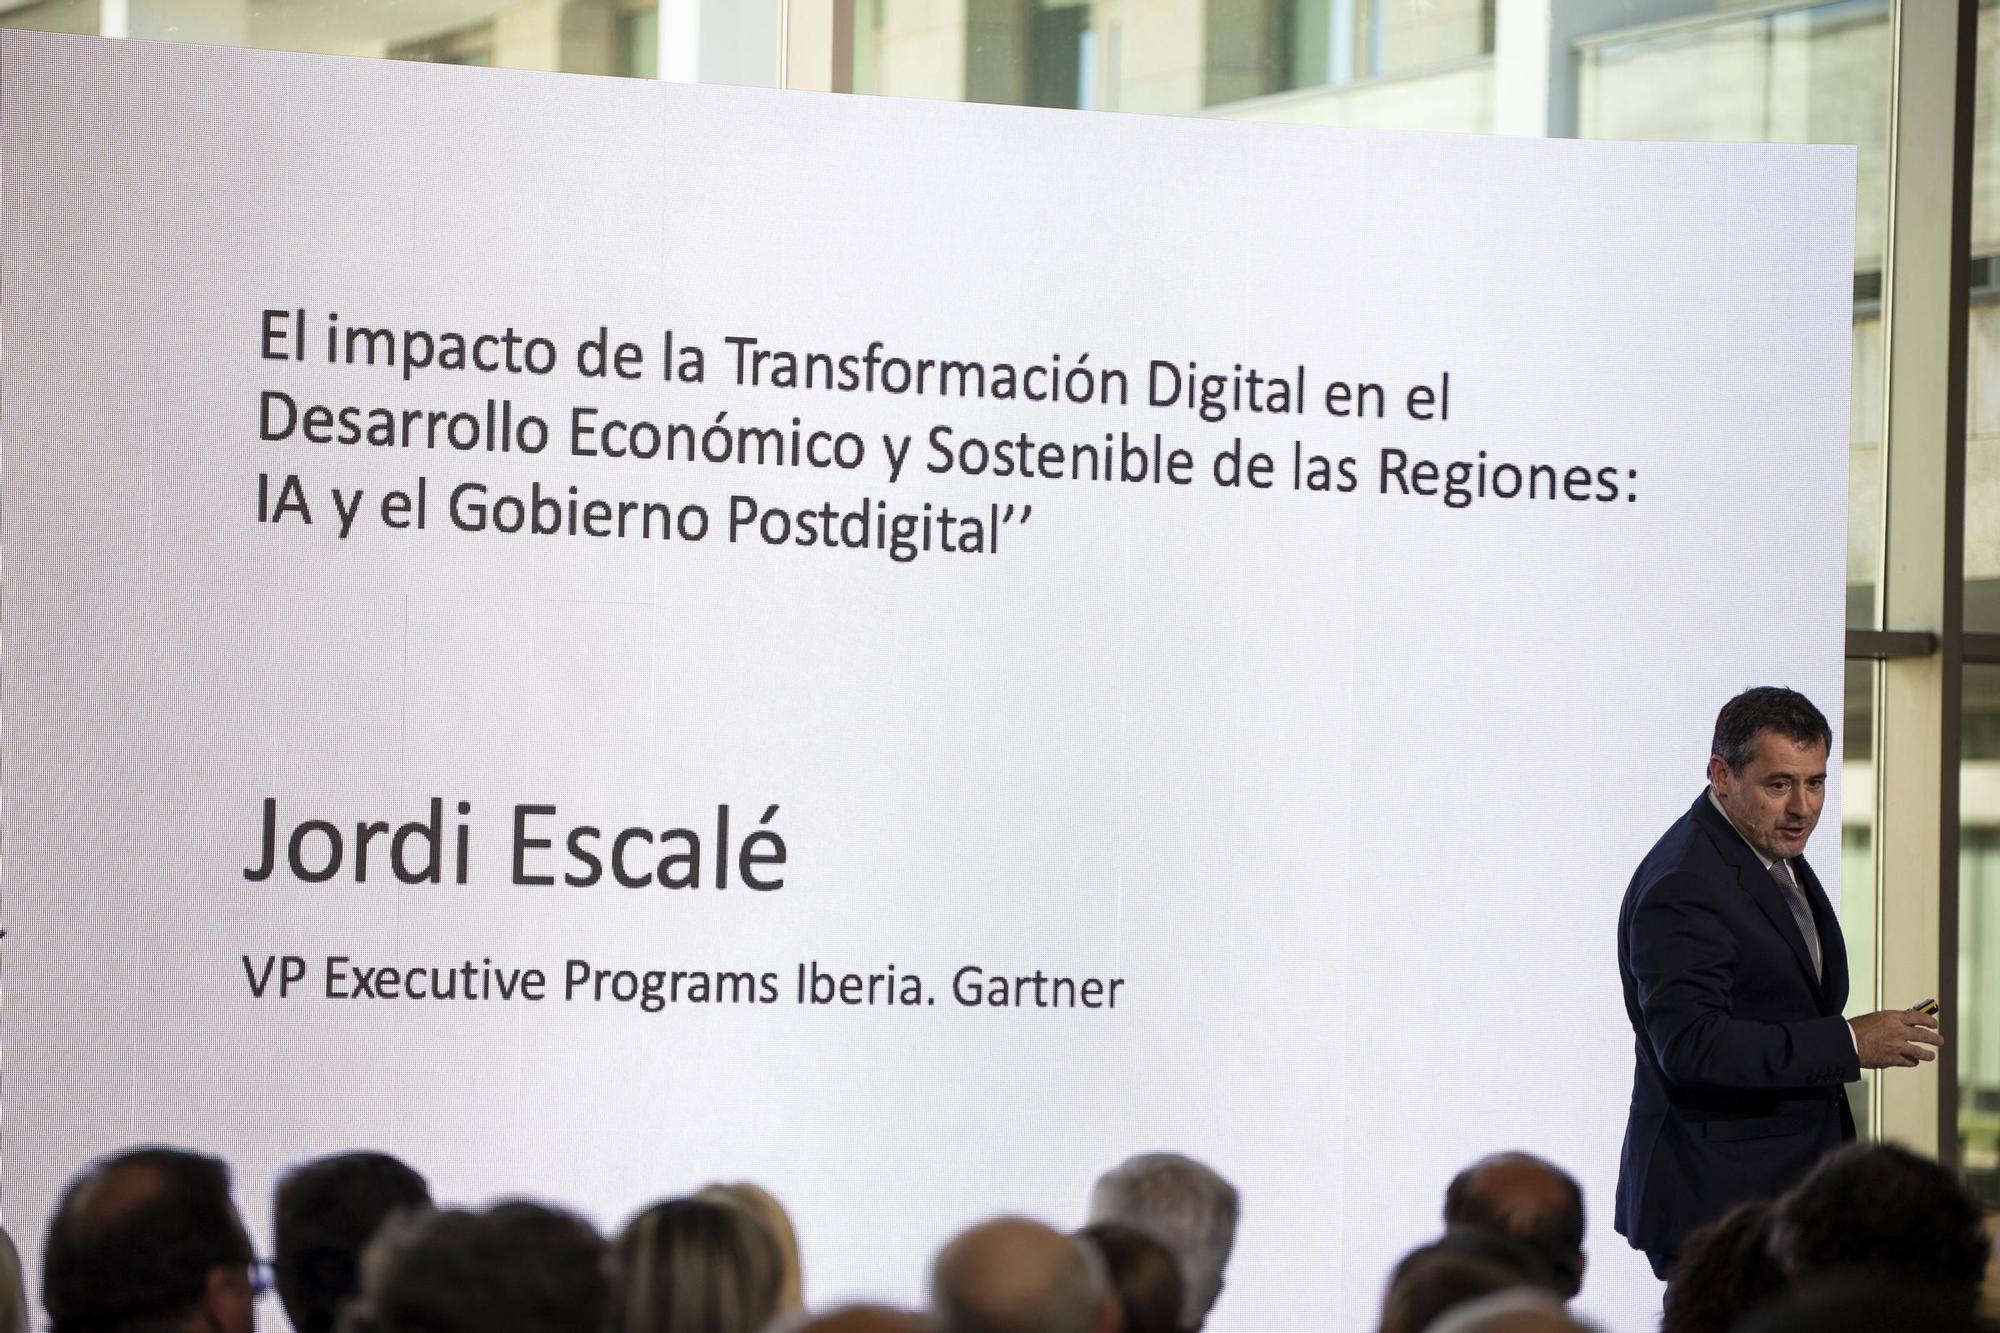 La presentación de la 'Estrategia de Transformación Digital de Extremadura', en imágenes